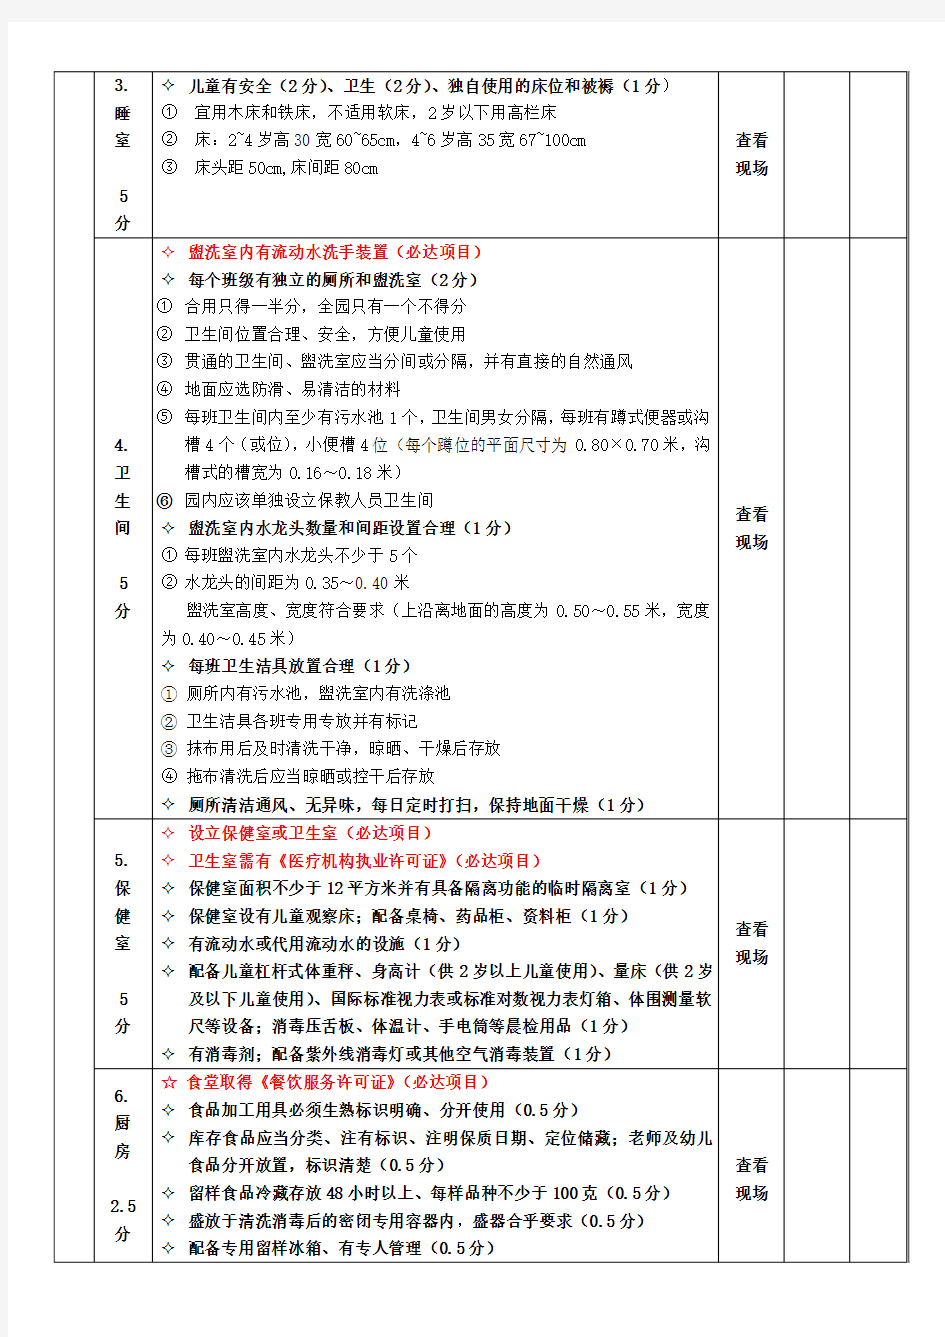 广州市托幼机构卫生保健评价标准--